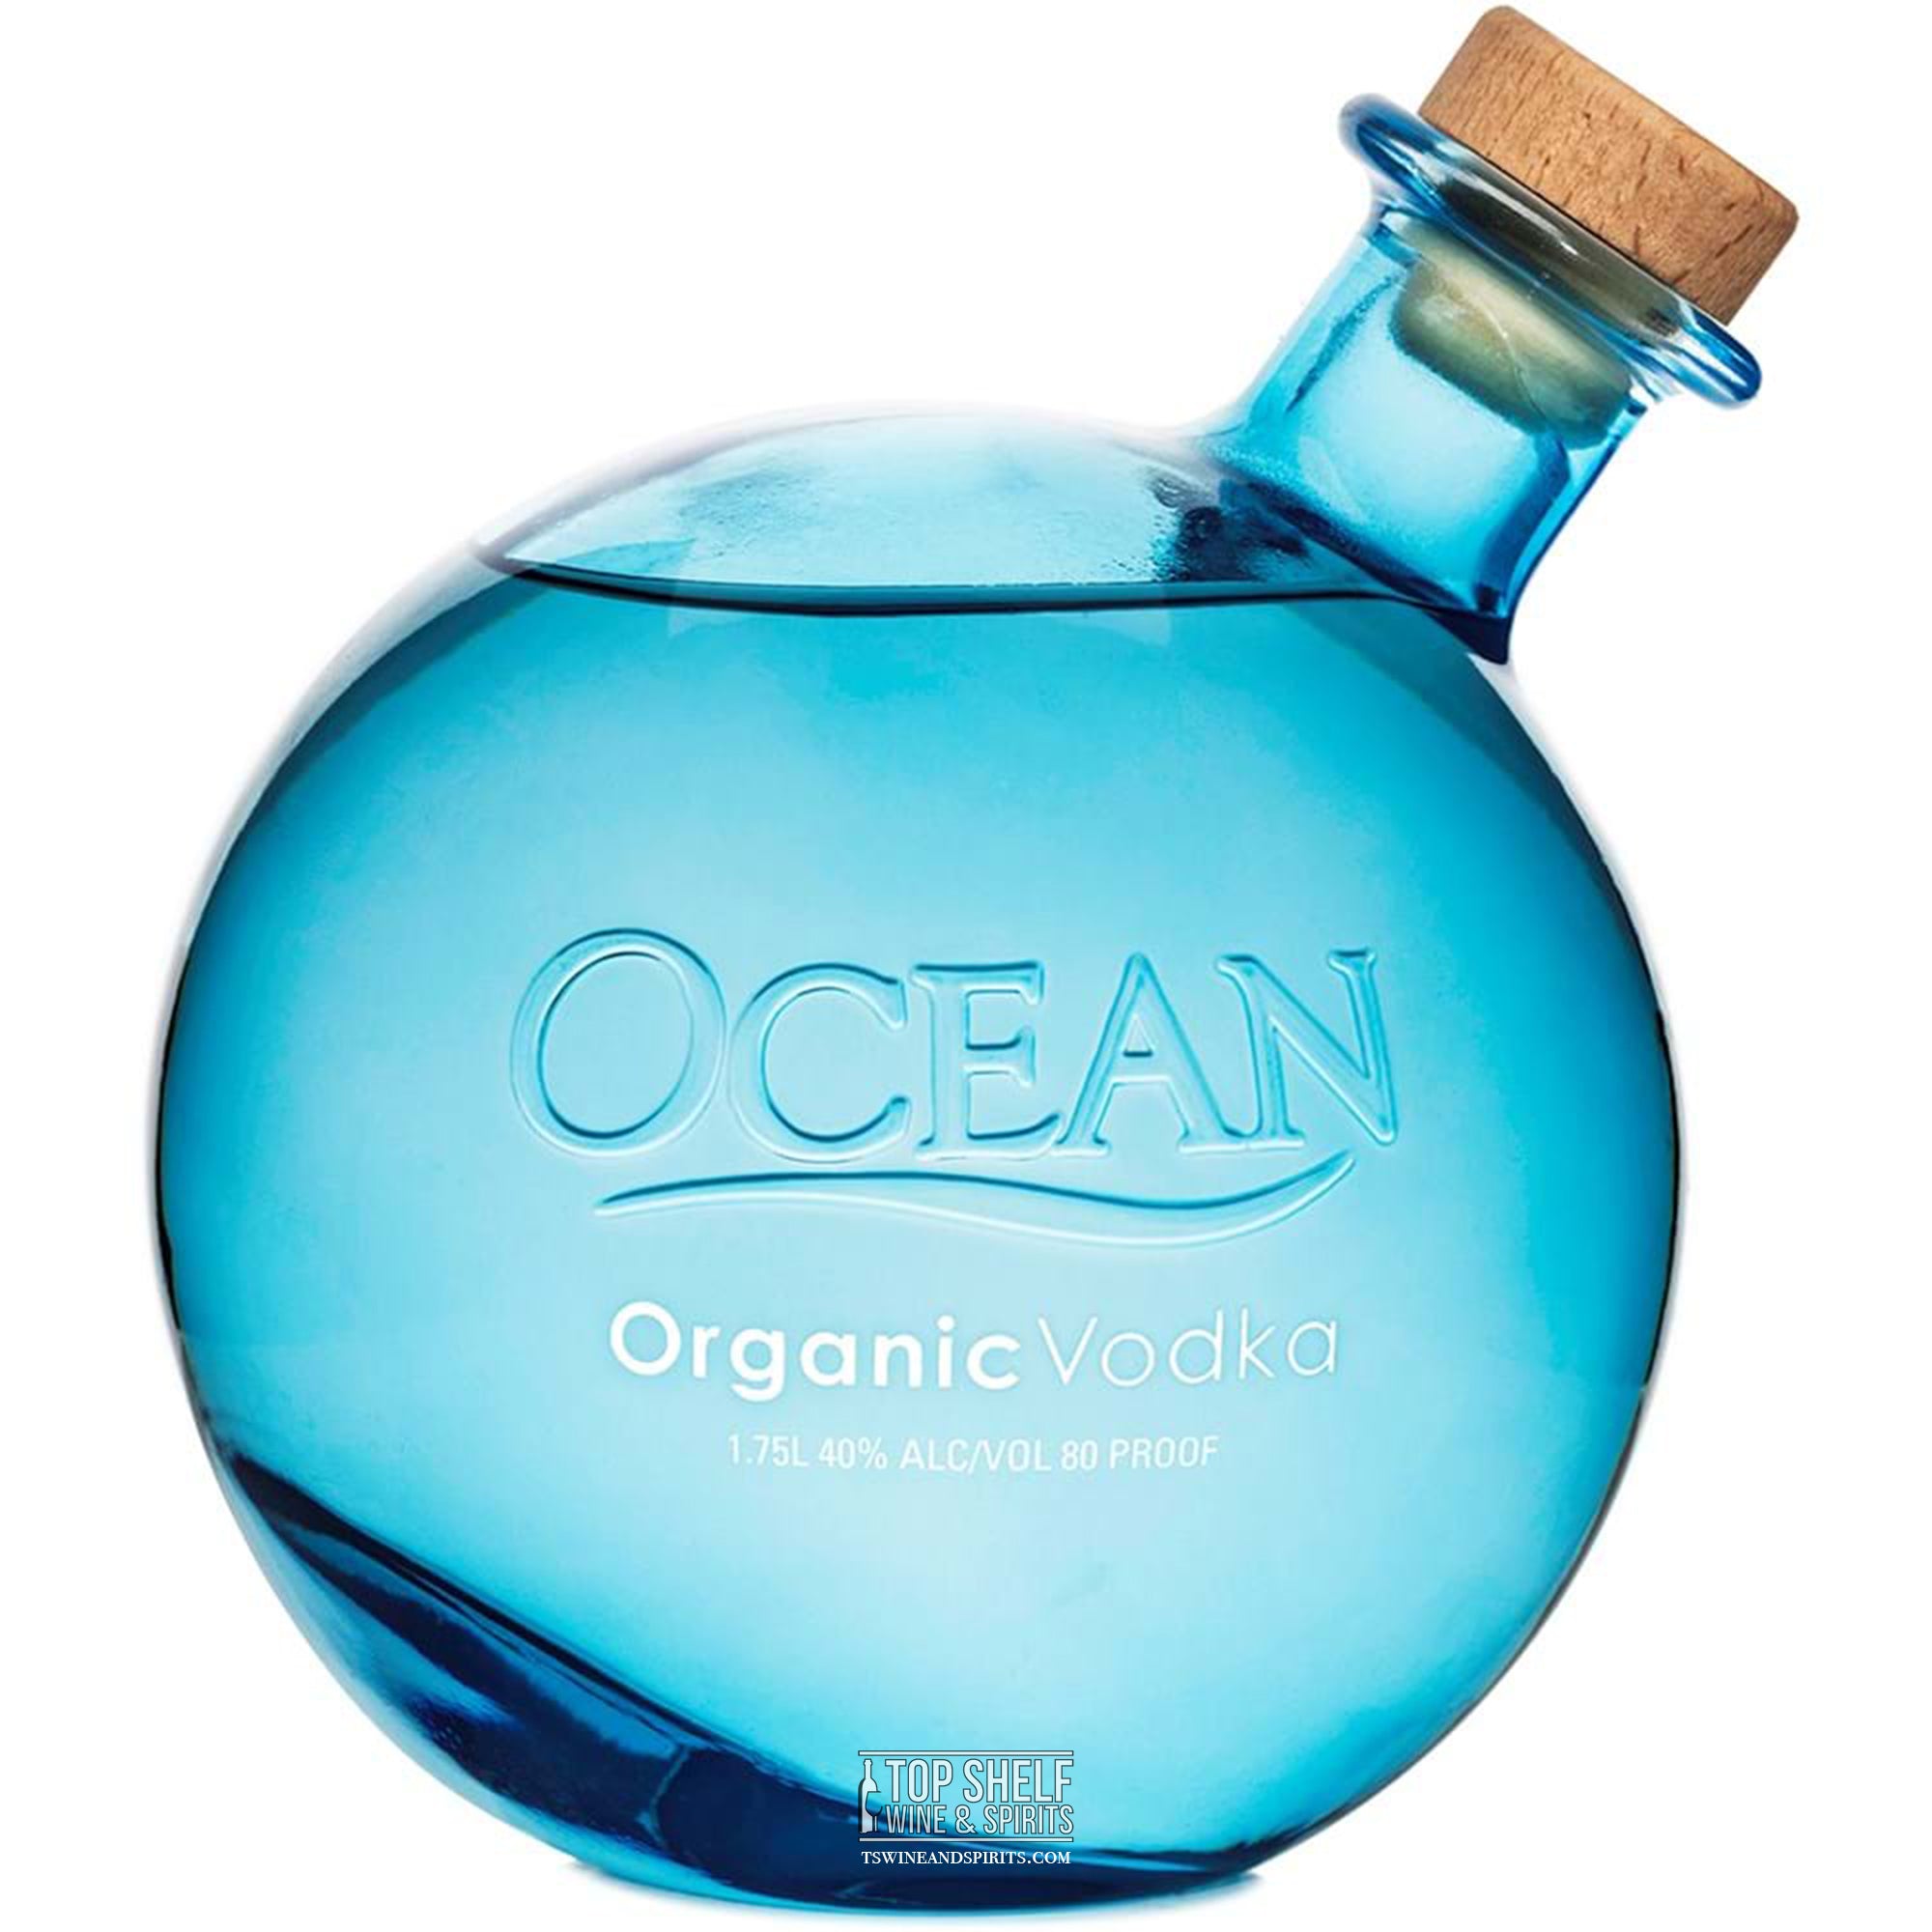 Ocean Vodka Organic - 1.75 Liter